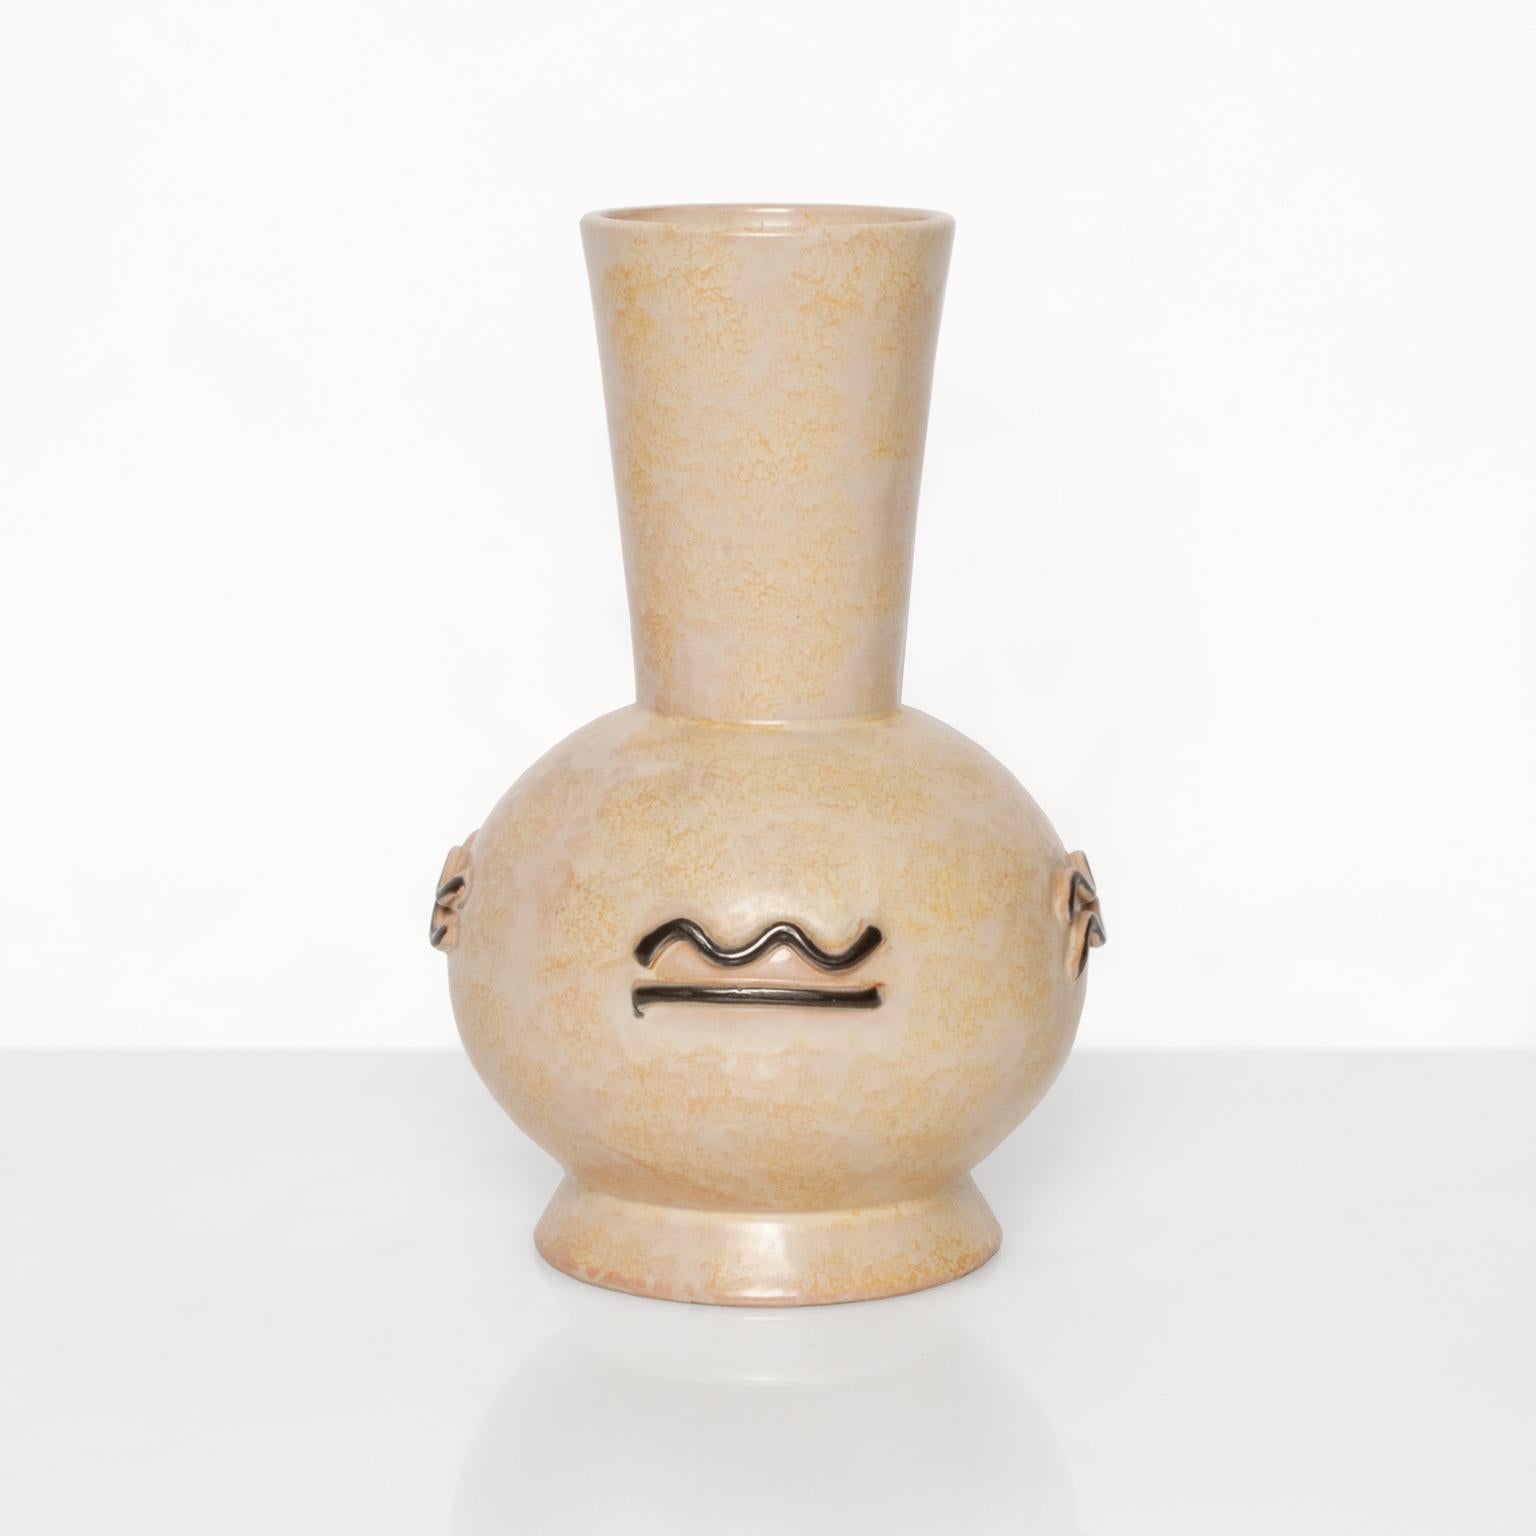 Skandinavisch-moderne, schwedische Art-déco-Vase mit gesprenkelter Glasur und erhabenem Dekor auf allen Seiten. Entworfen von dem Bildhauer Einar Luterkort für Upsala Ekeby,
 
Maße: Durchmesser 7